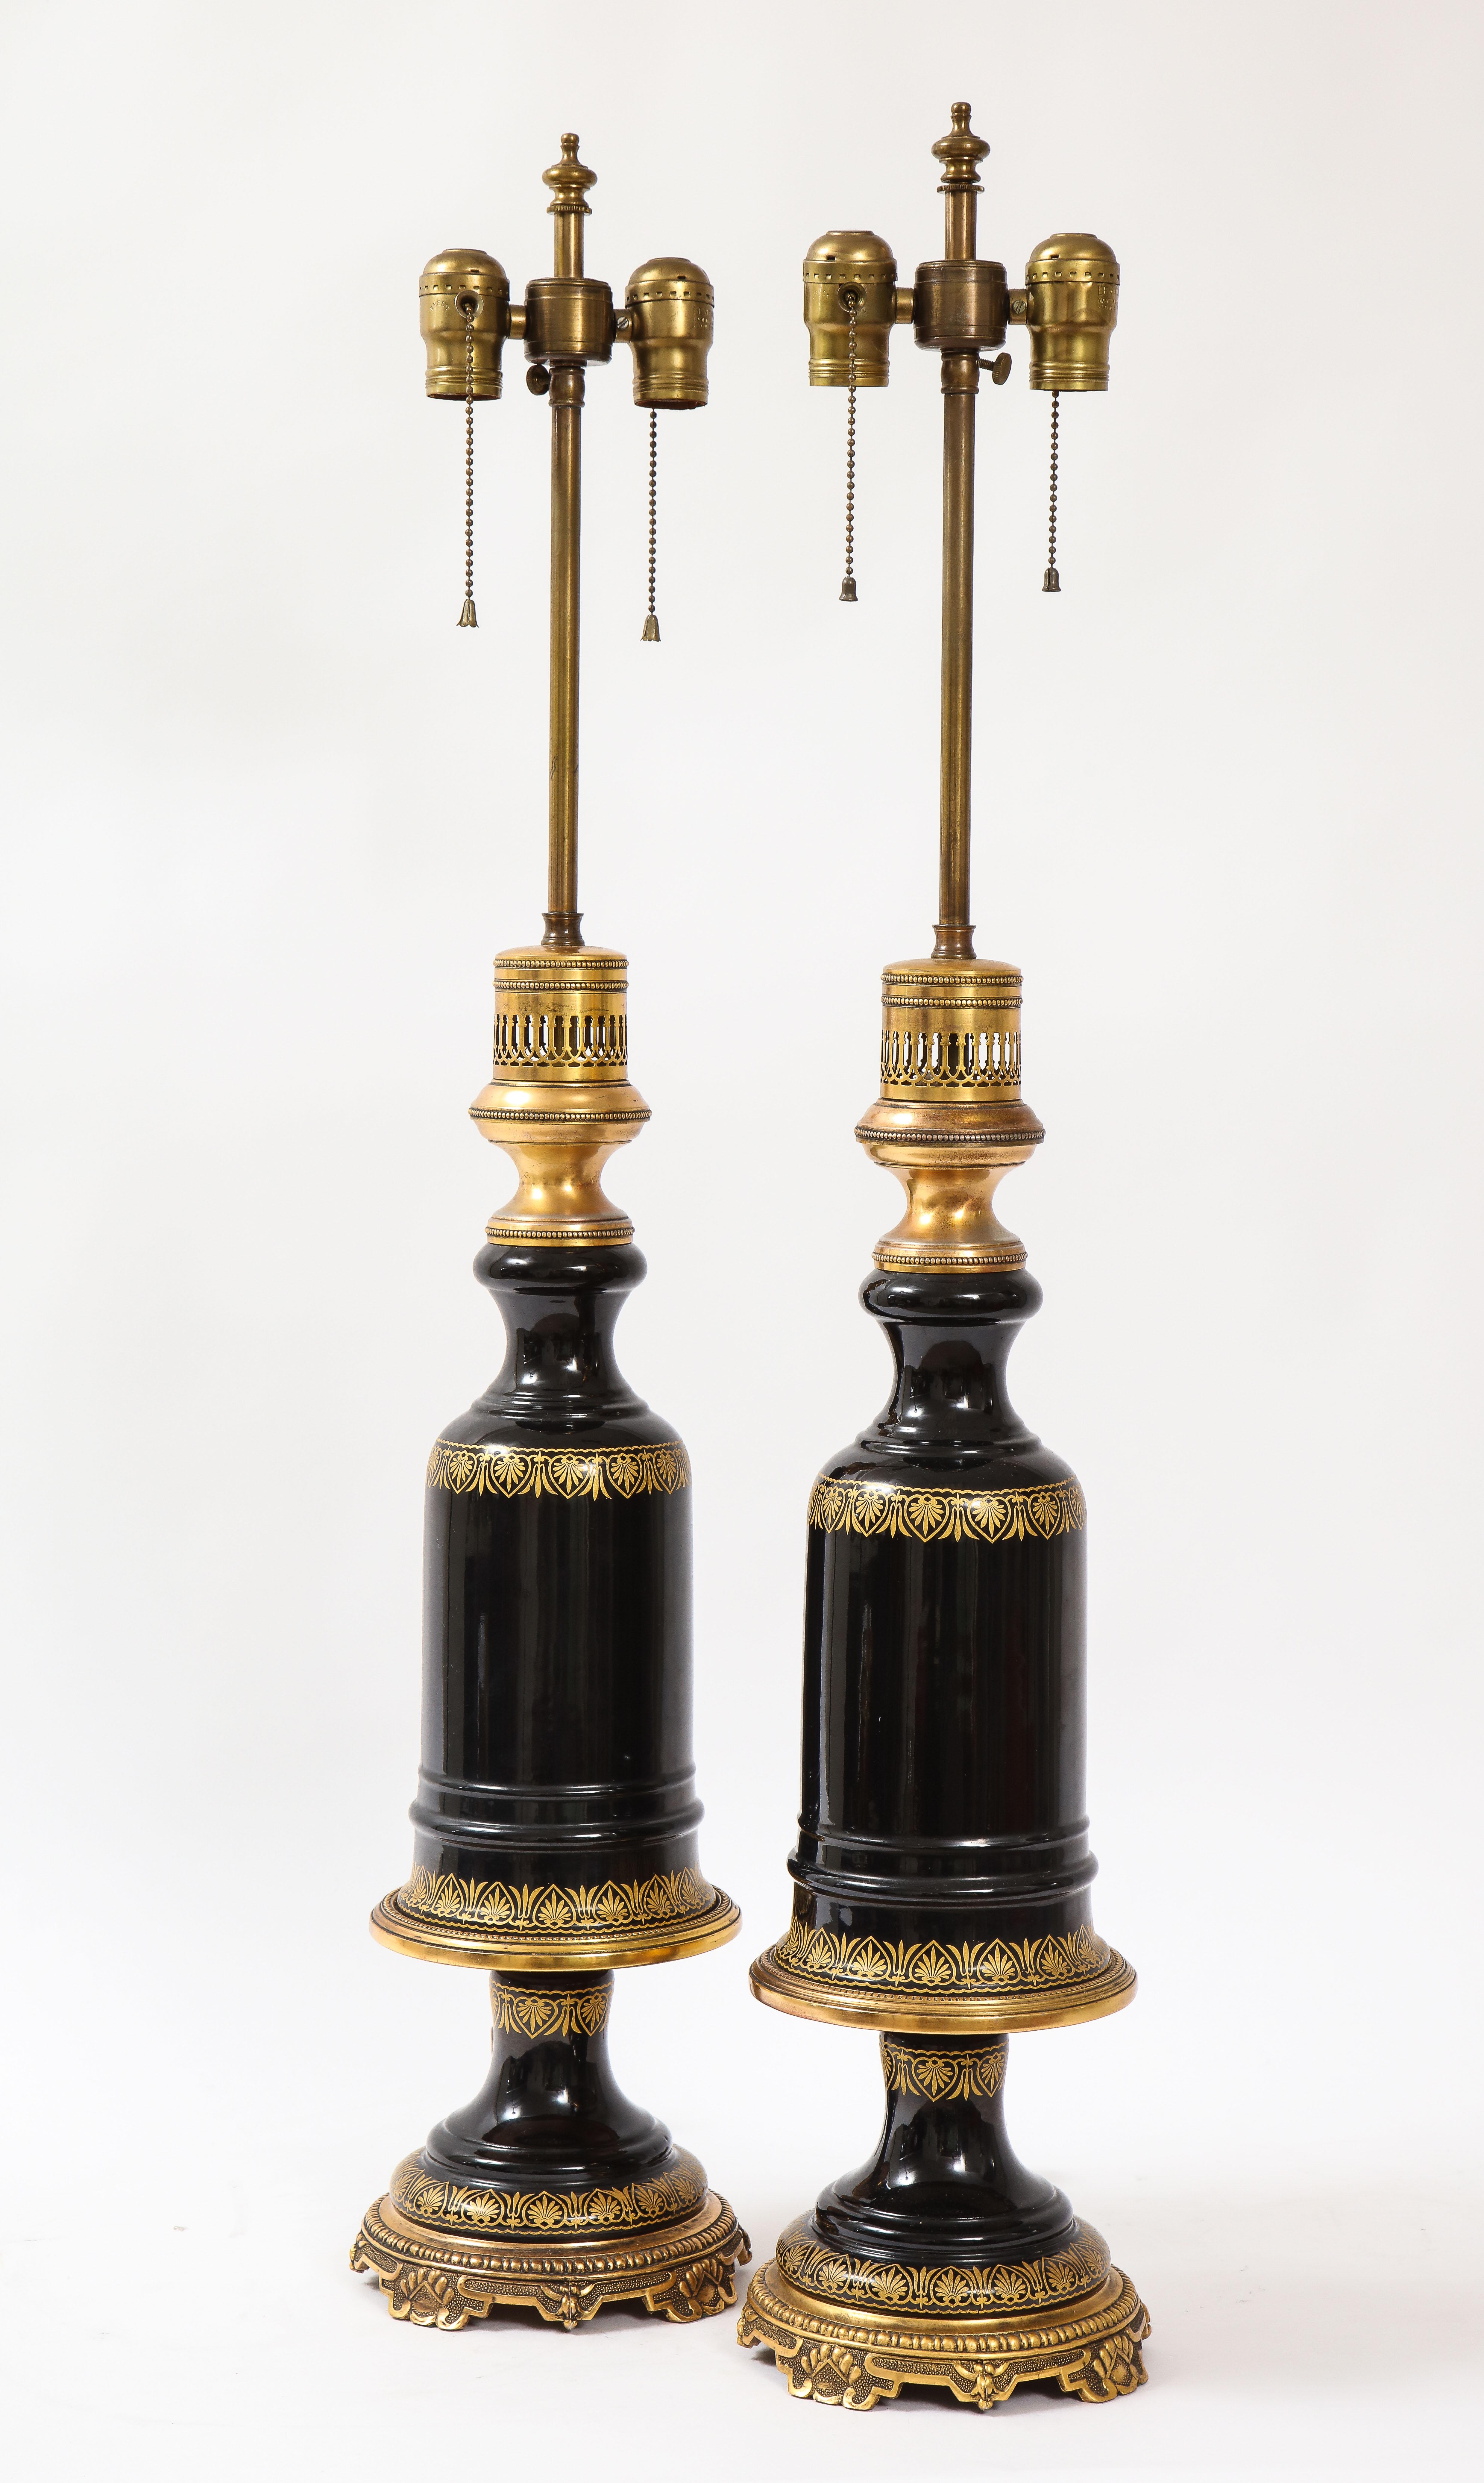 Une belle paire de lampes françaises montées en bronze doré et en cristal d'améthyste noir. Chacune d'entre elles est magnifiquement soufflée à la main dans un cristal d'améthyste noire et ornée d'une décoration dorée à 24 carats. Ils sont tous